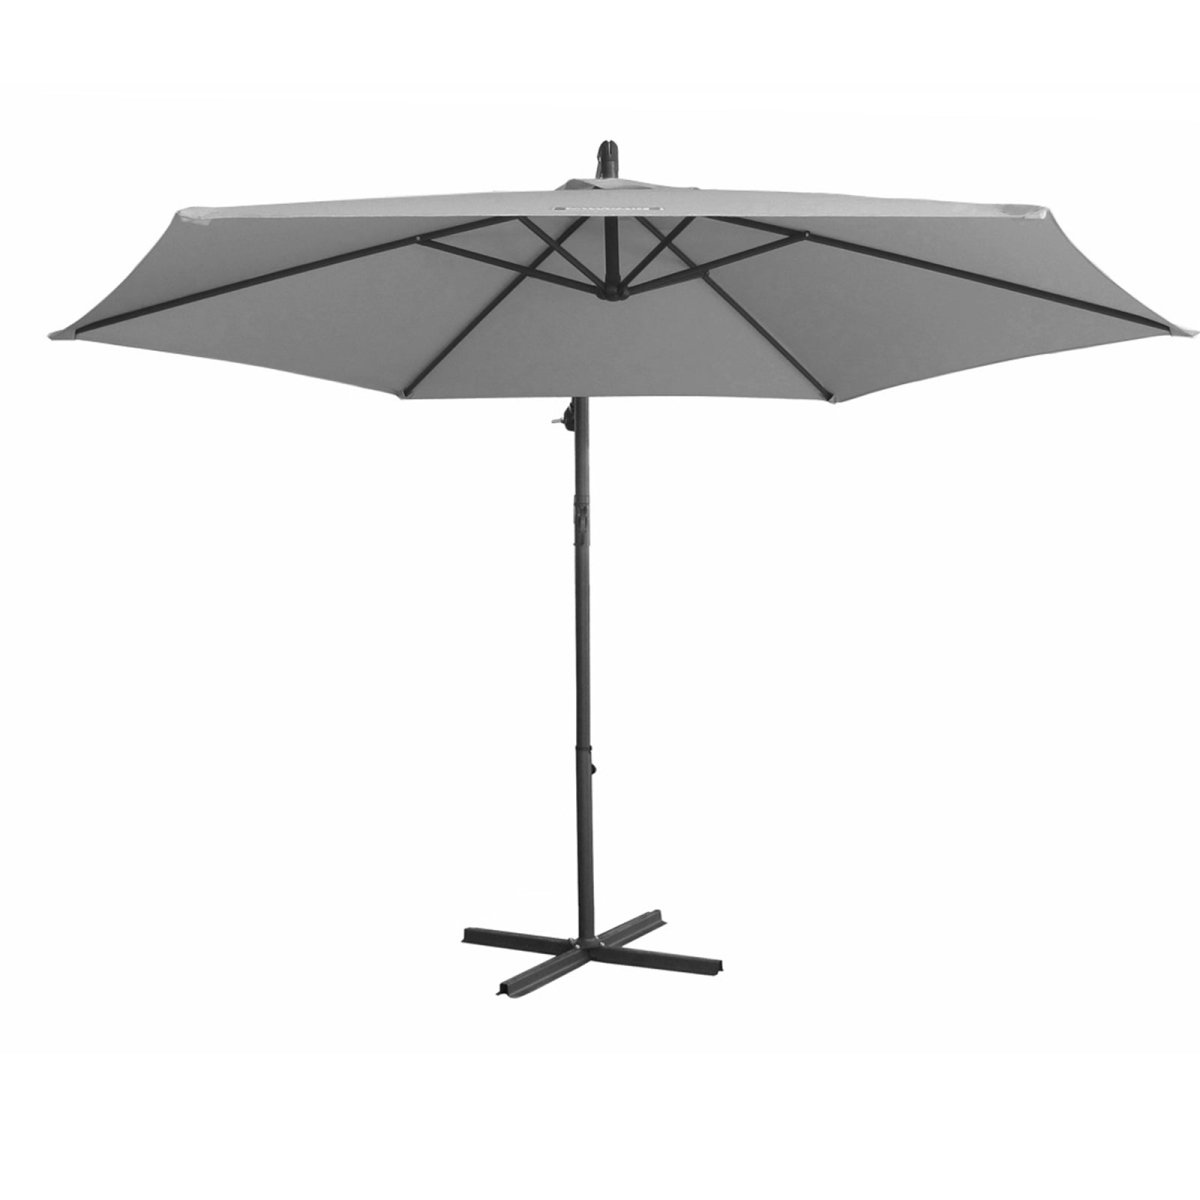 Milano 3M Outdoor Umbrella Cantilever With Protective Cover Patio Garden Shade - Grey - Outdoor Immersion